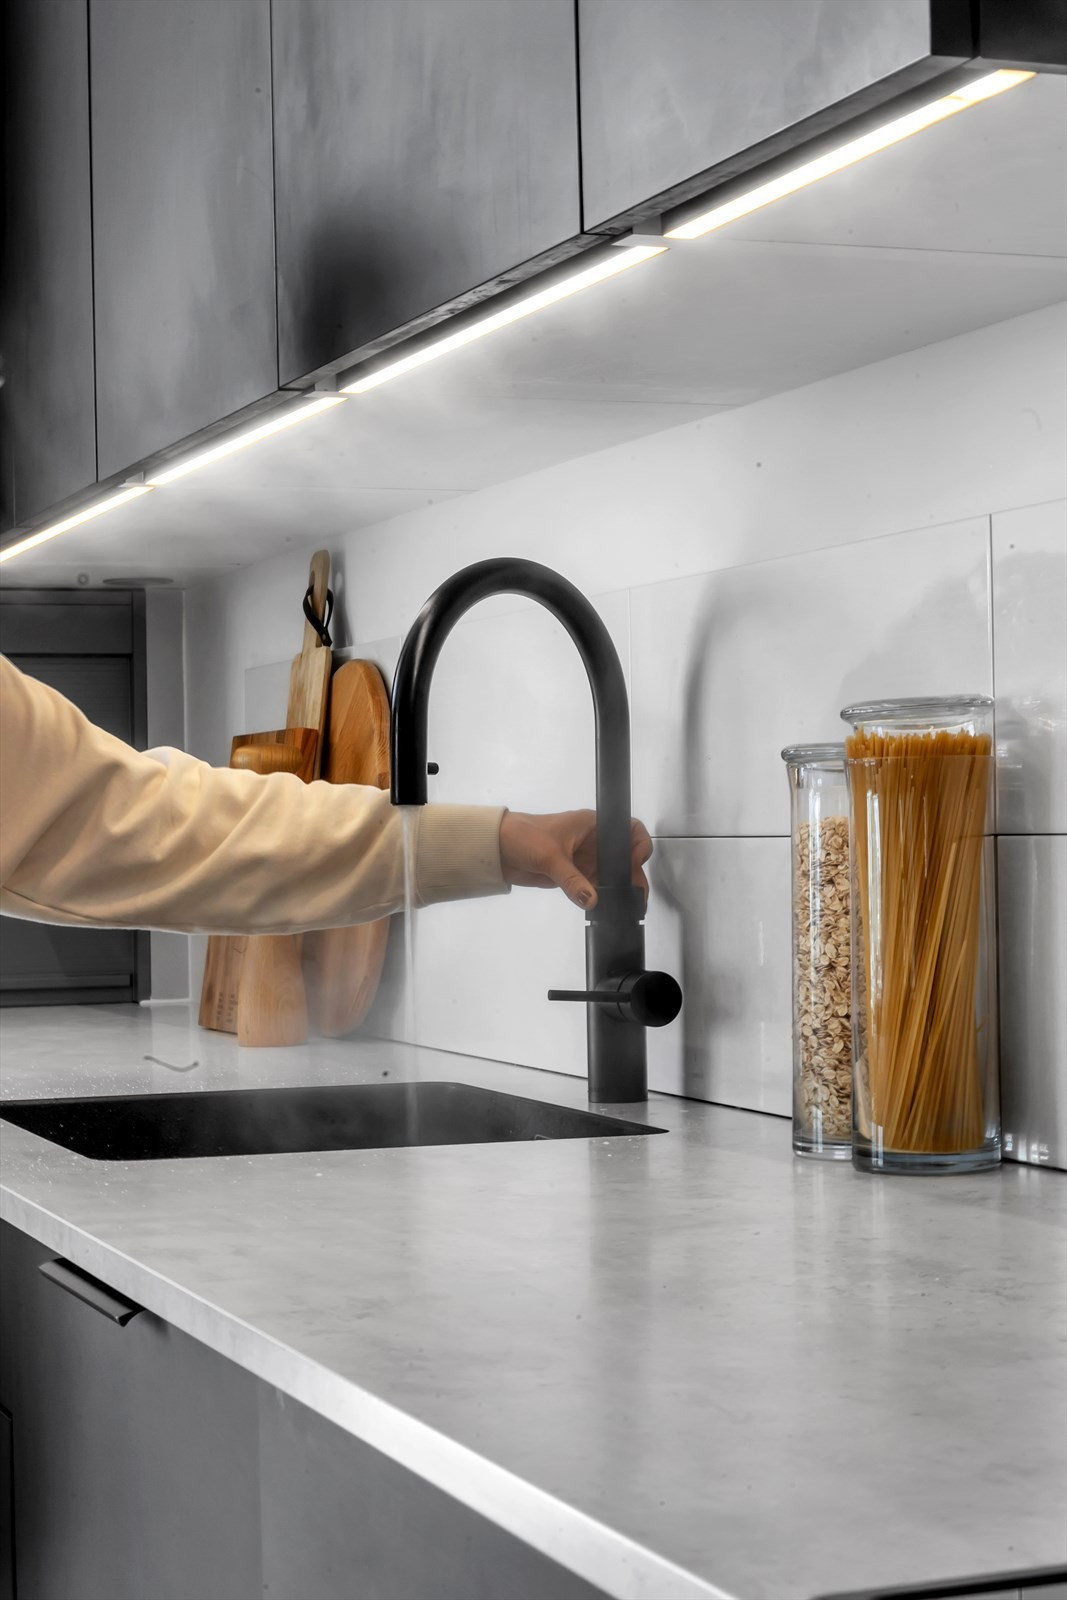 Med kaldt, varmt og 100  C kokende vann fra samme kran gir Quooker nye muligheter. Til kaffe, te, matlaging og rengjøring. En enkel og sikker løsning til det moderne kjøkken som sparer tid, vann og strøm.